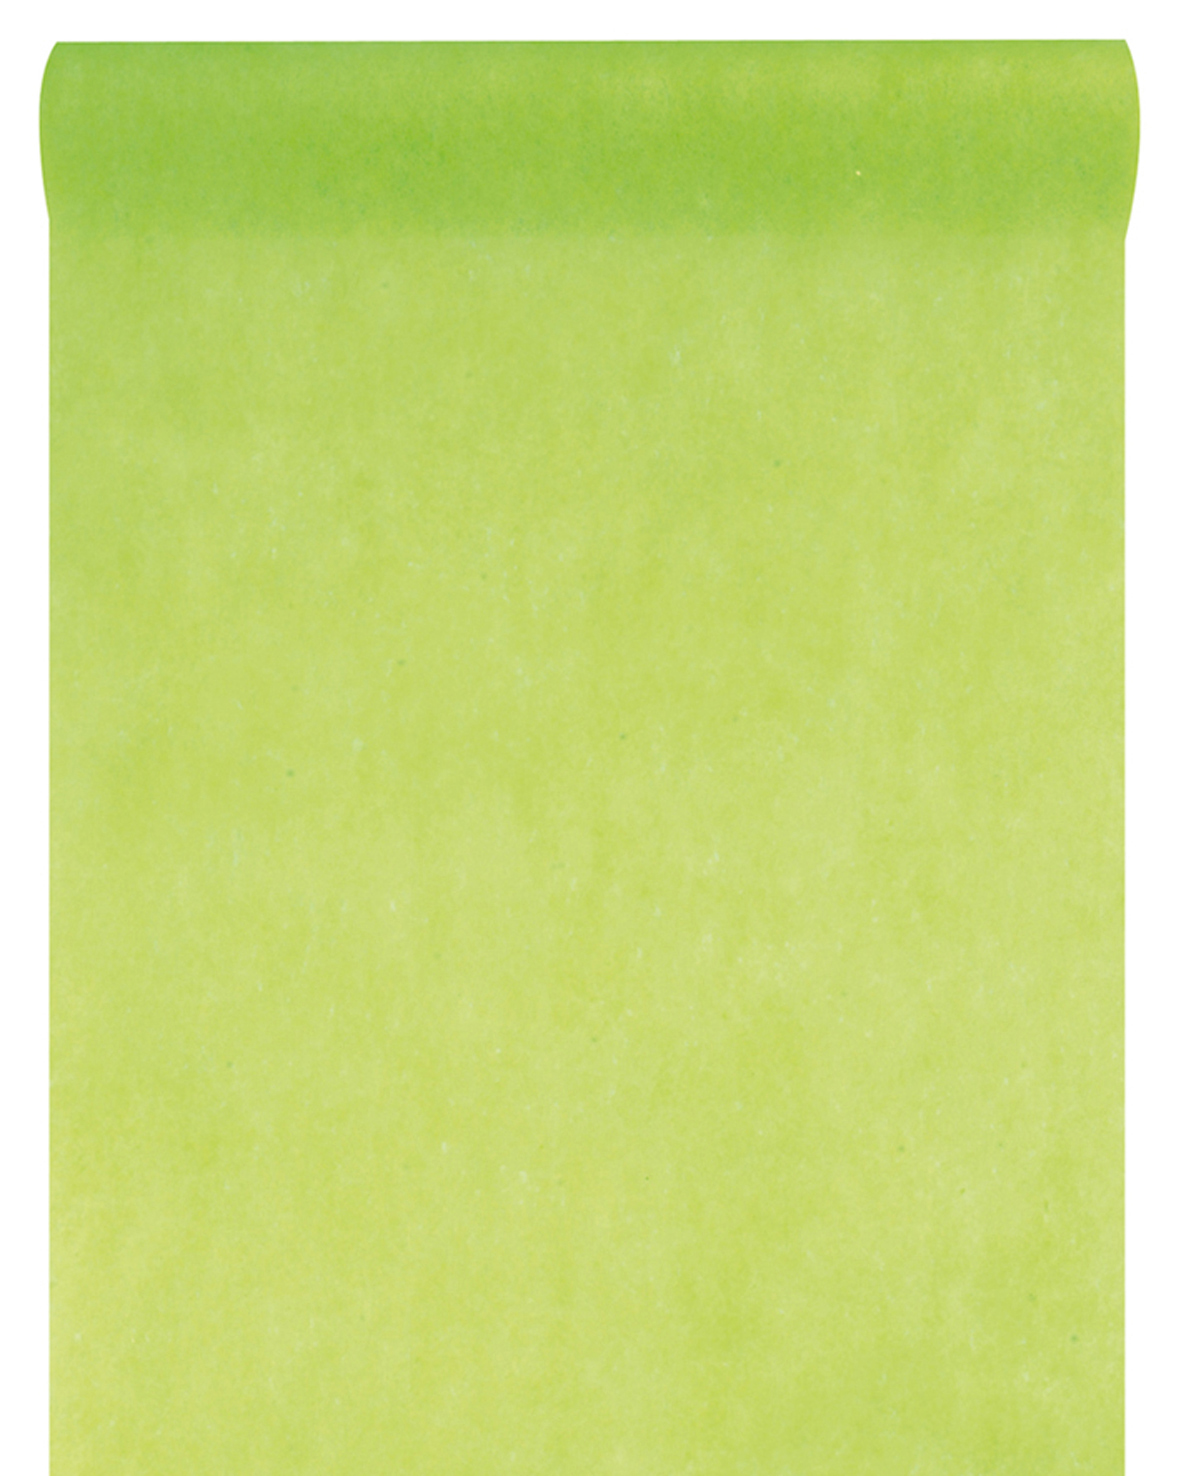 Vlies-Tischläufer BUDGET, hellgrün, 60 cm breit, 10 m Rolle - budget, dekovlies, tischlaeufer